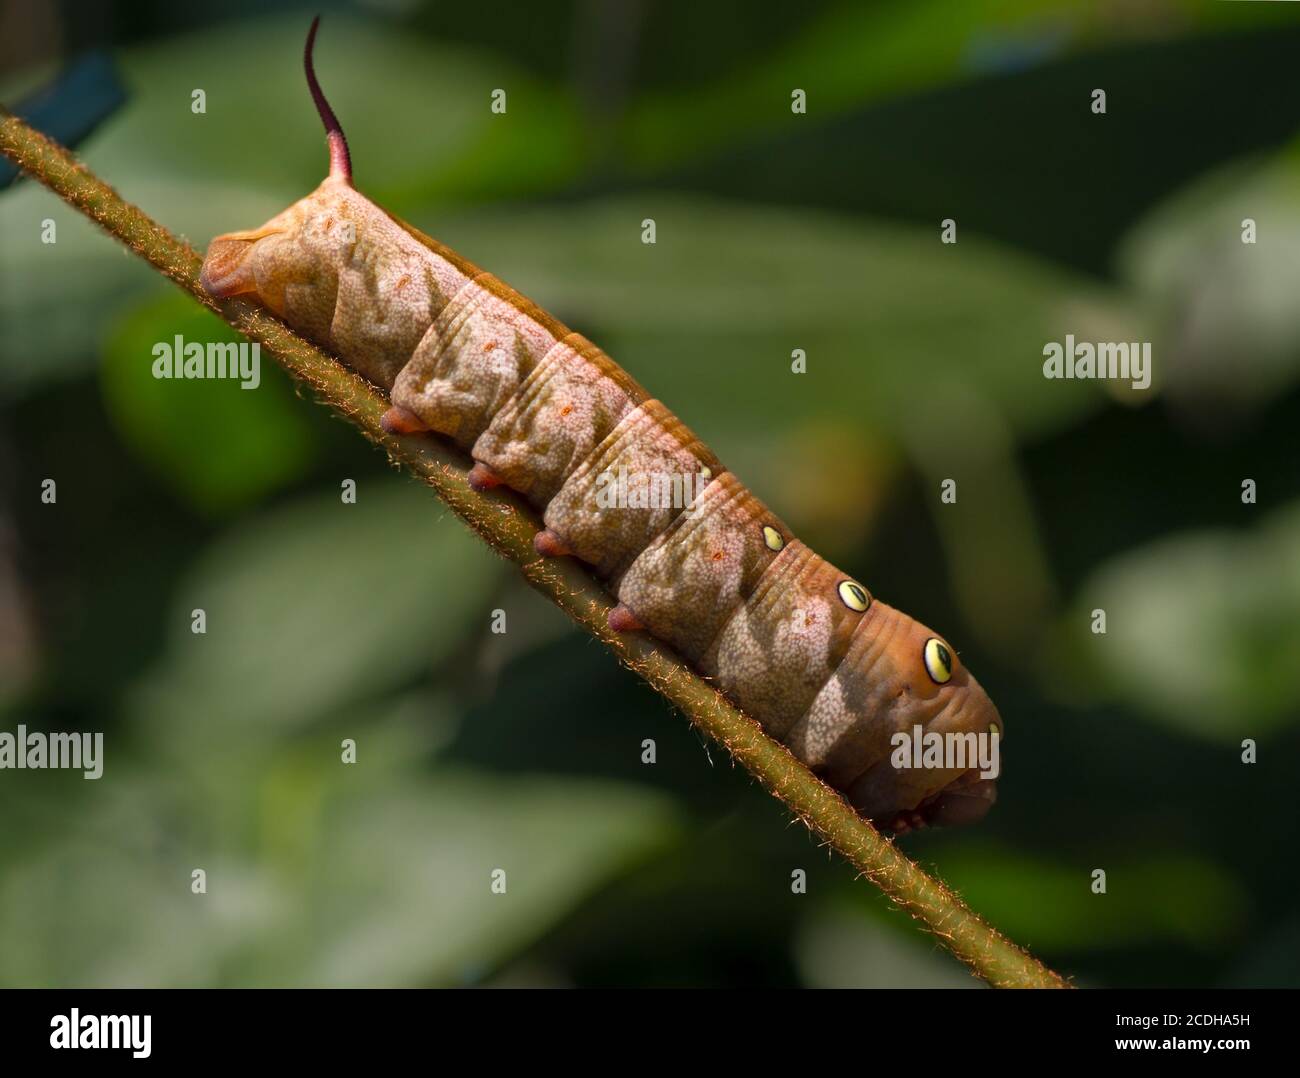 Large brown caterpillar Stock Photo